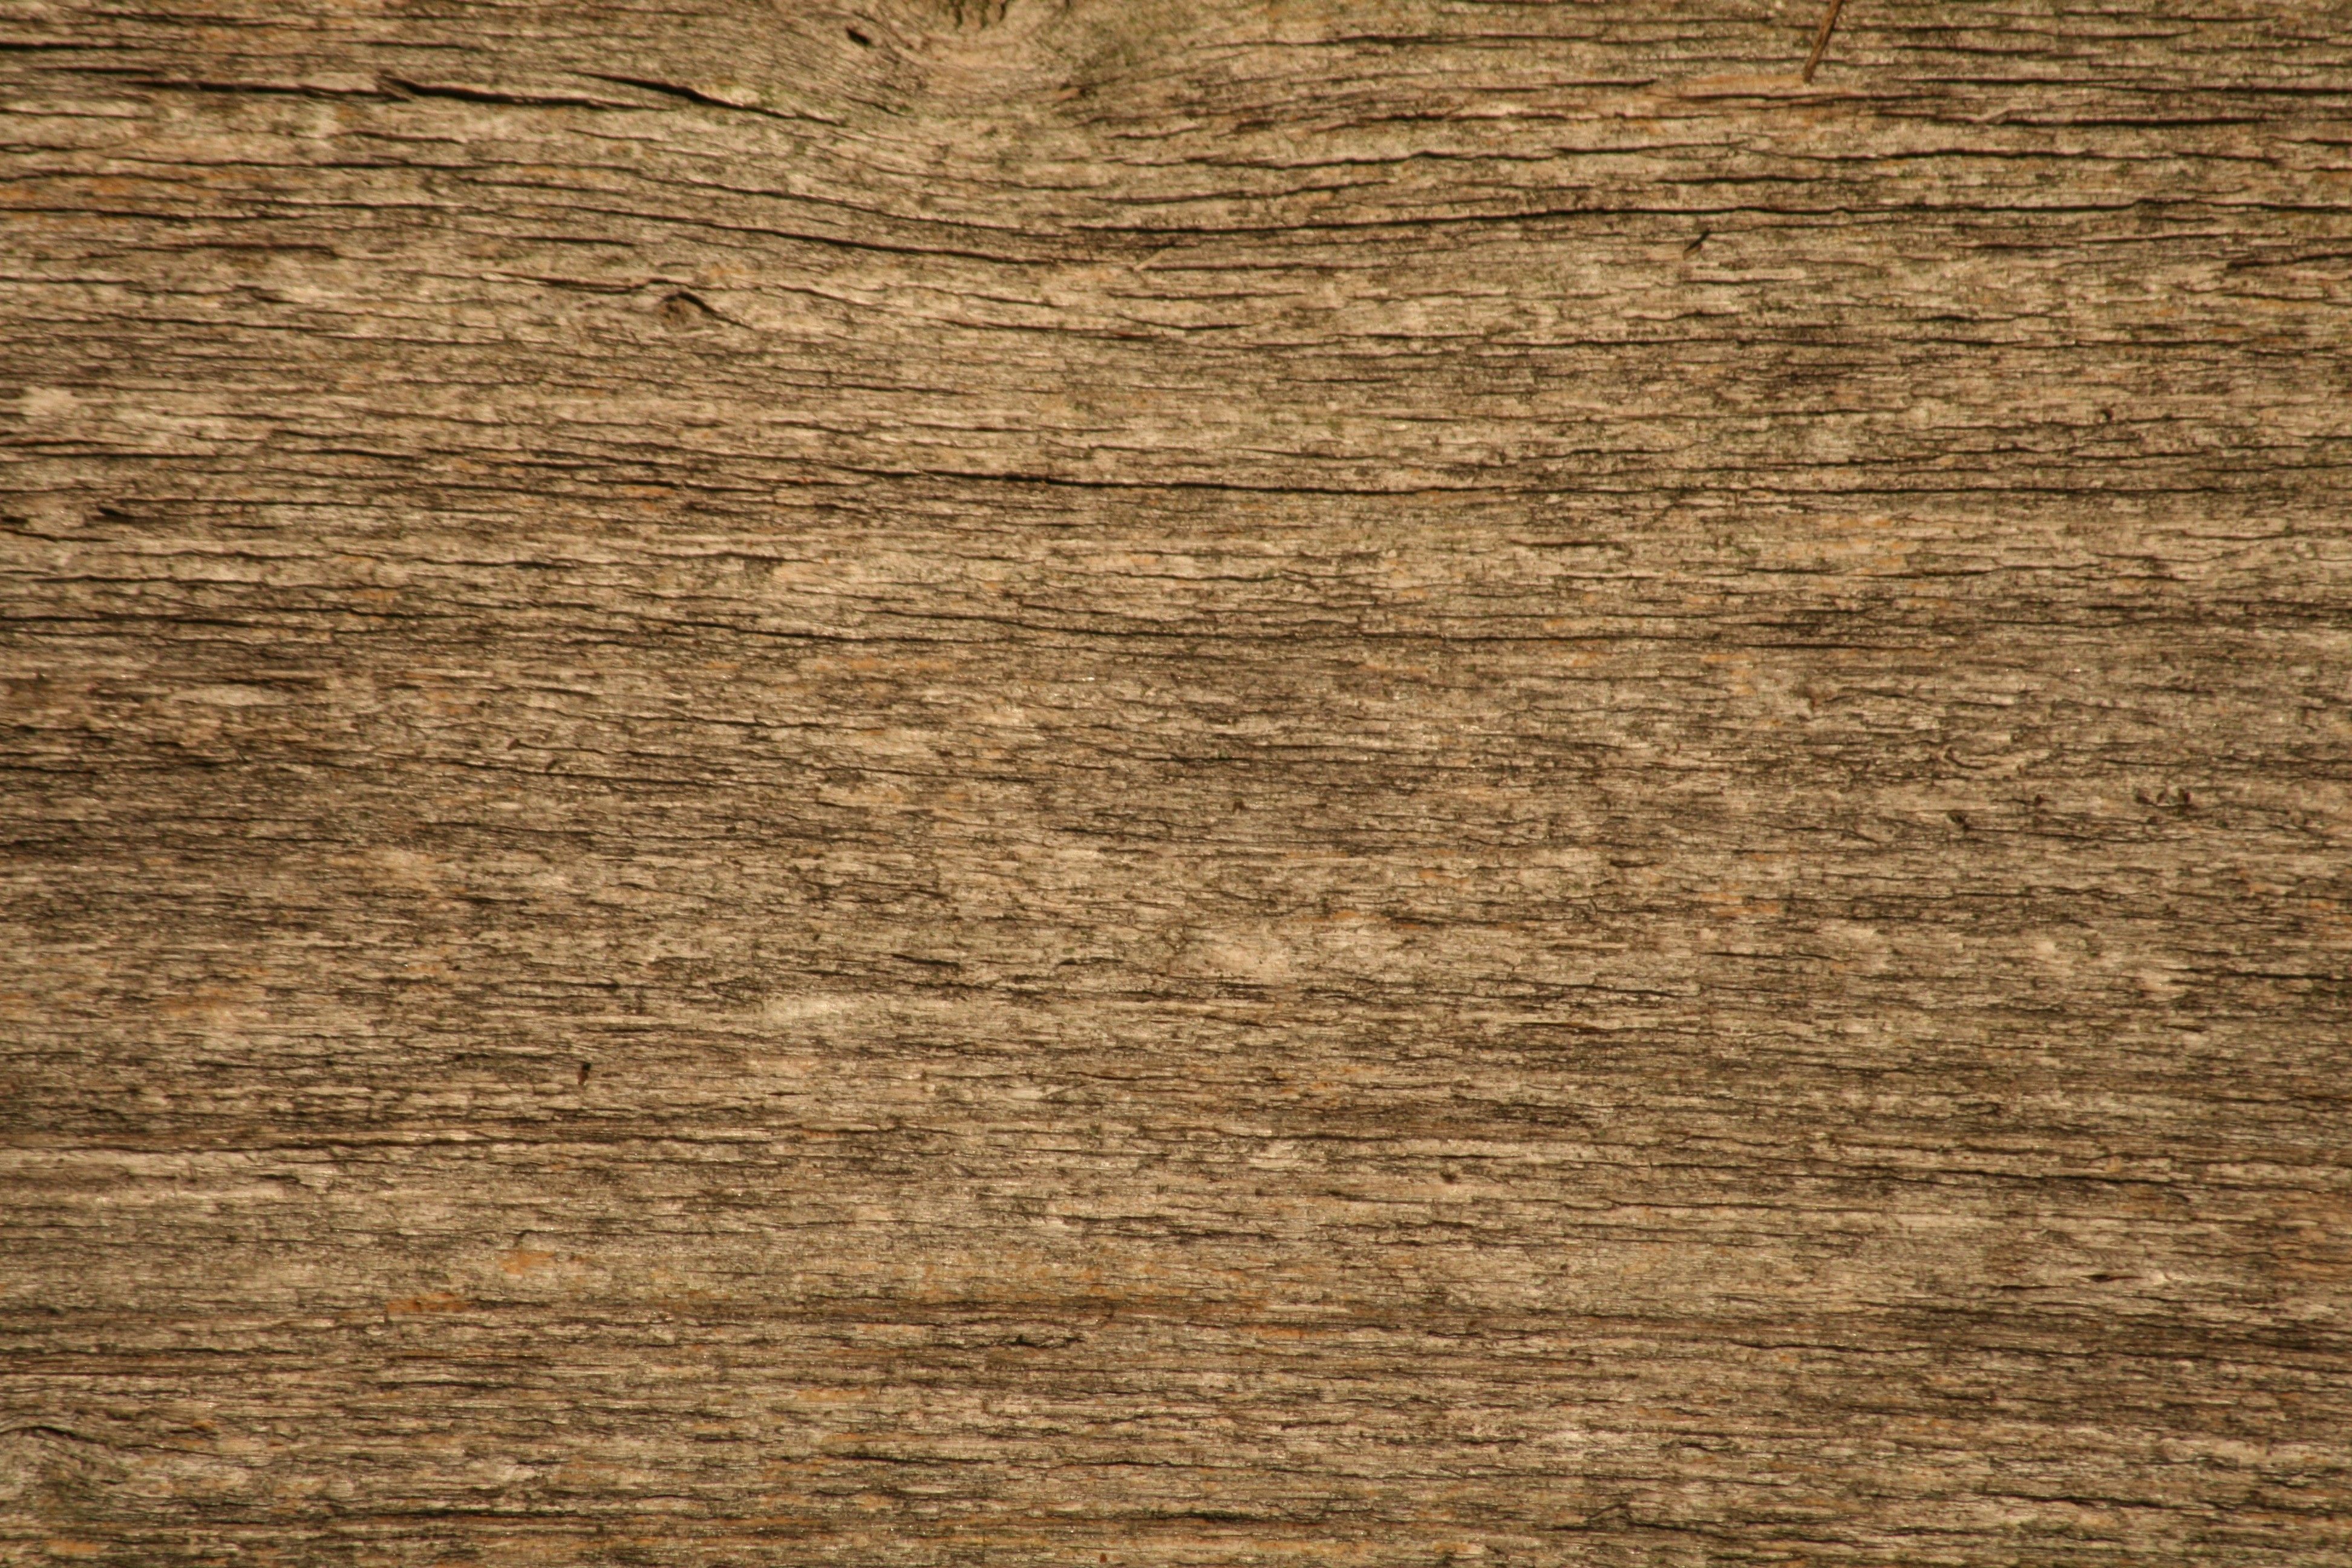 Wood Grain Textures